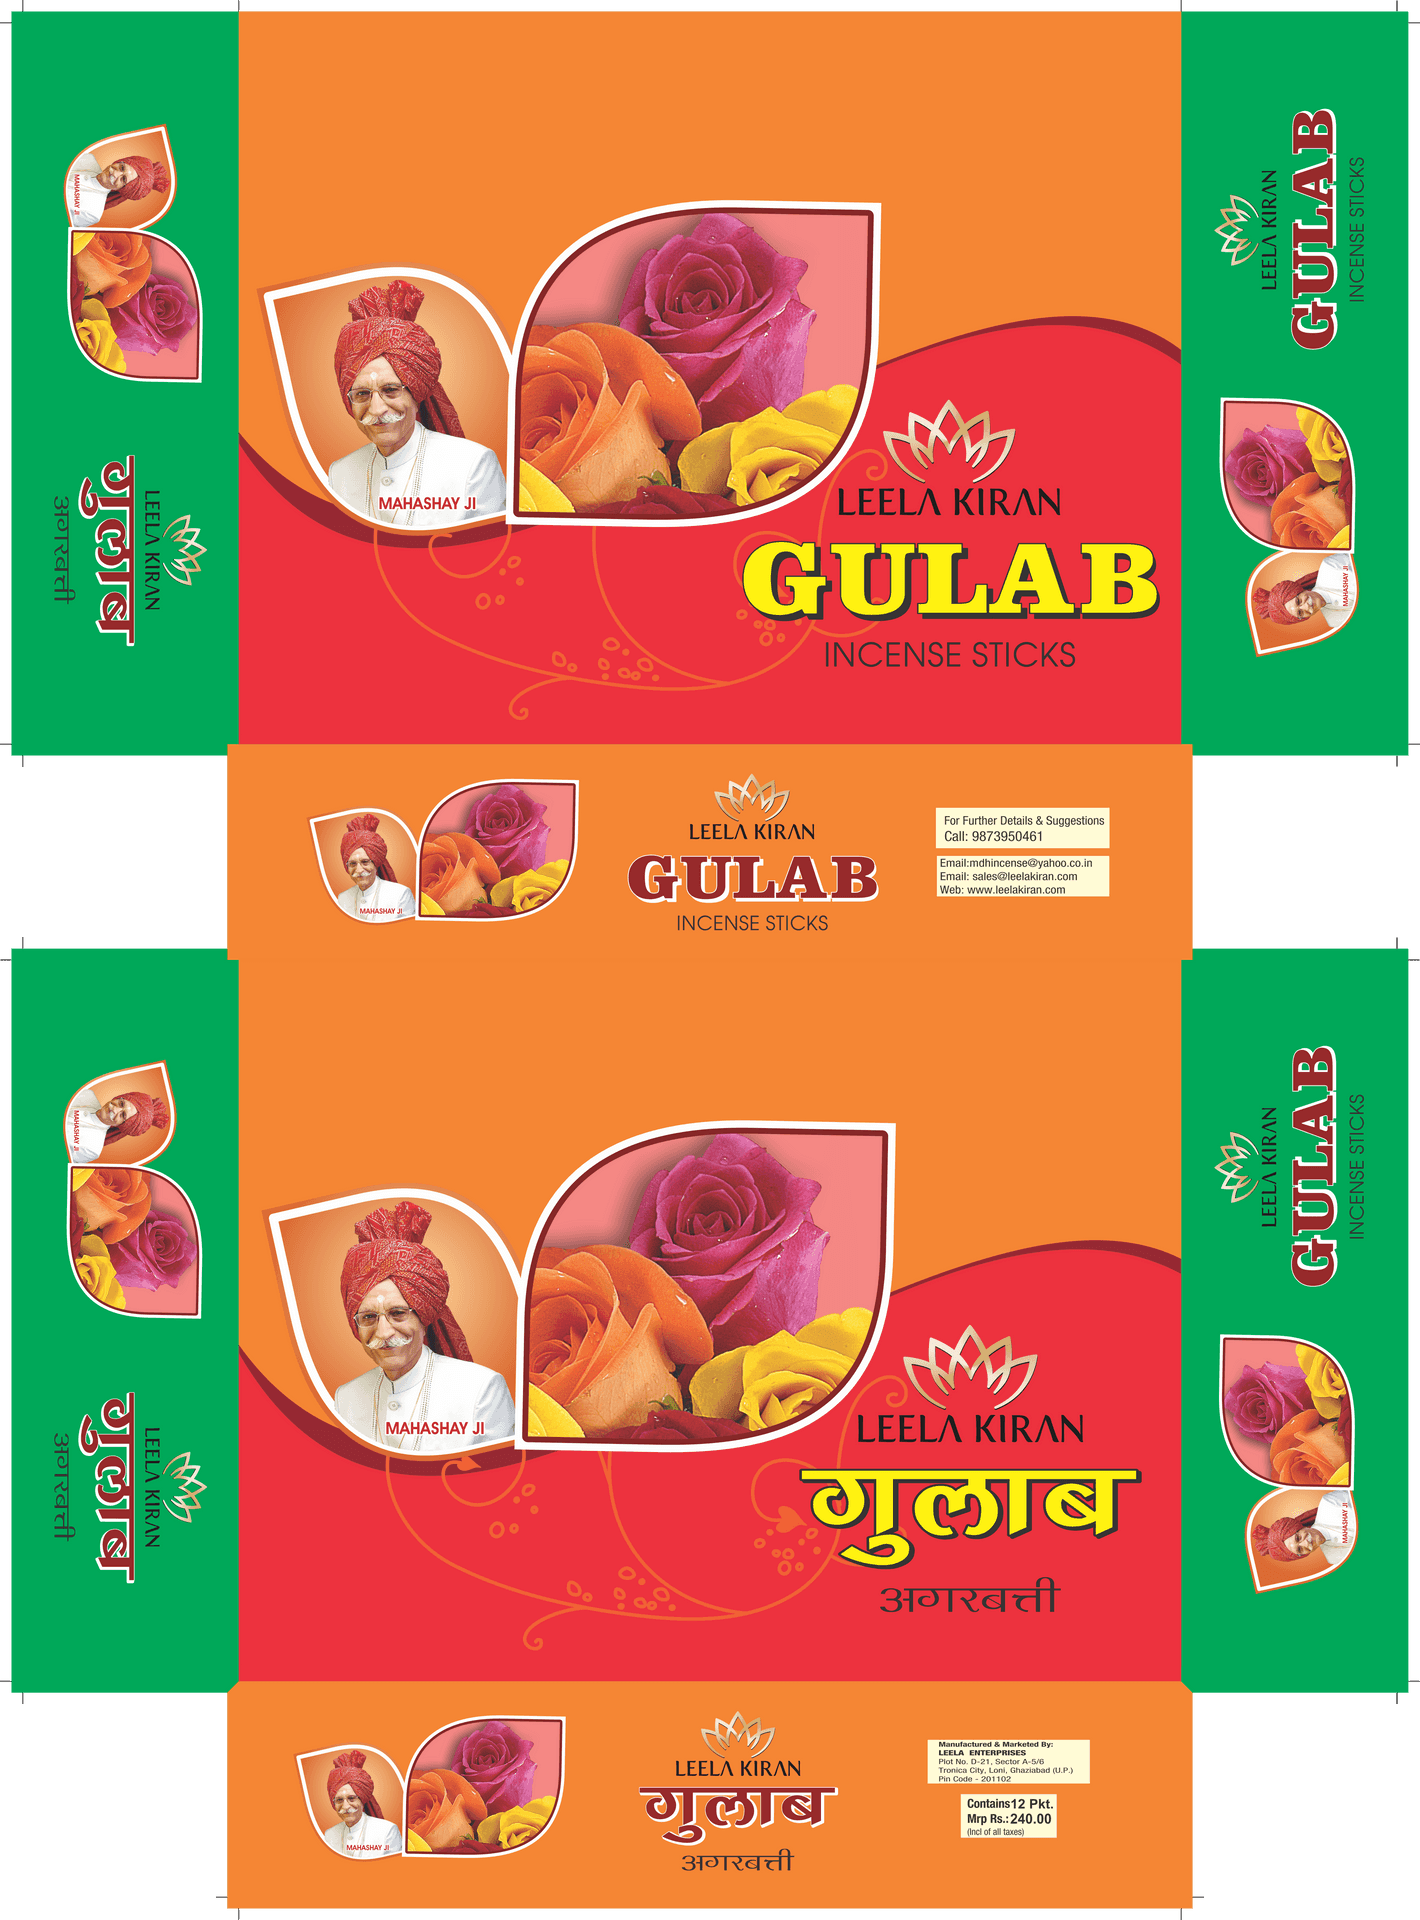 Leela Kiran Gulab Incense Sticks Packaging Design PNG